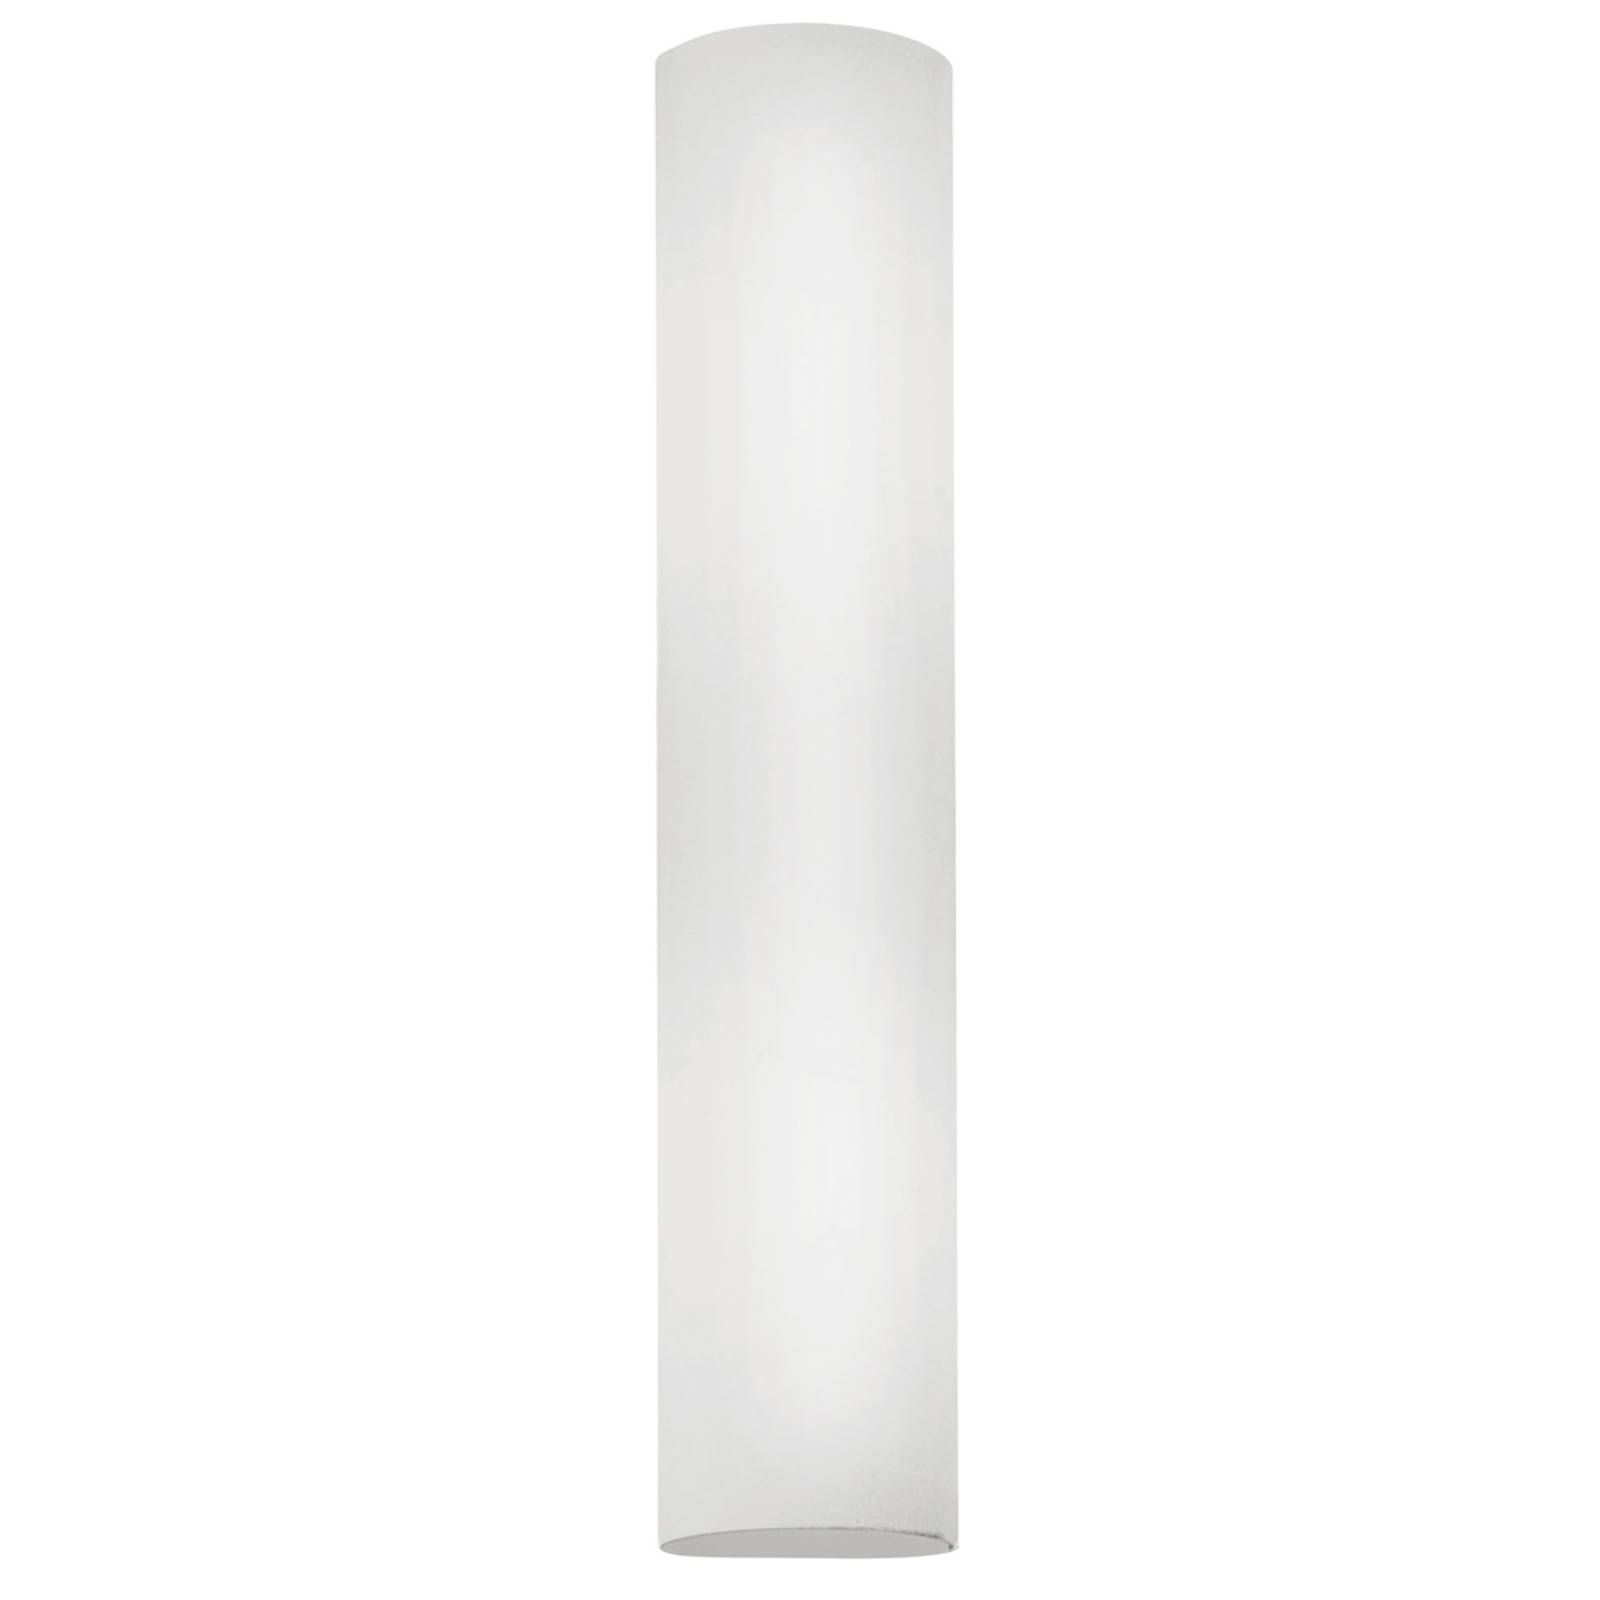 Jednoduché nástenné svietidlo Zena, výška 39 cm